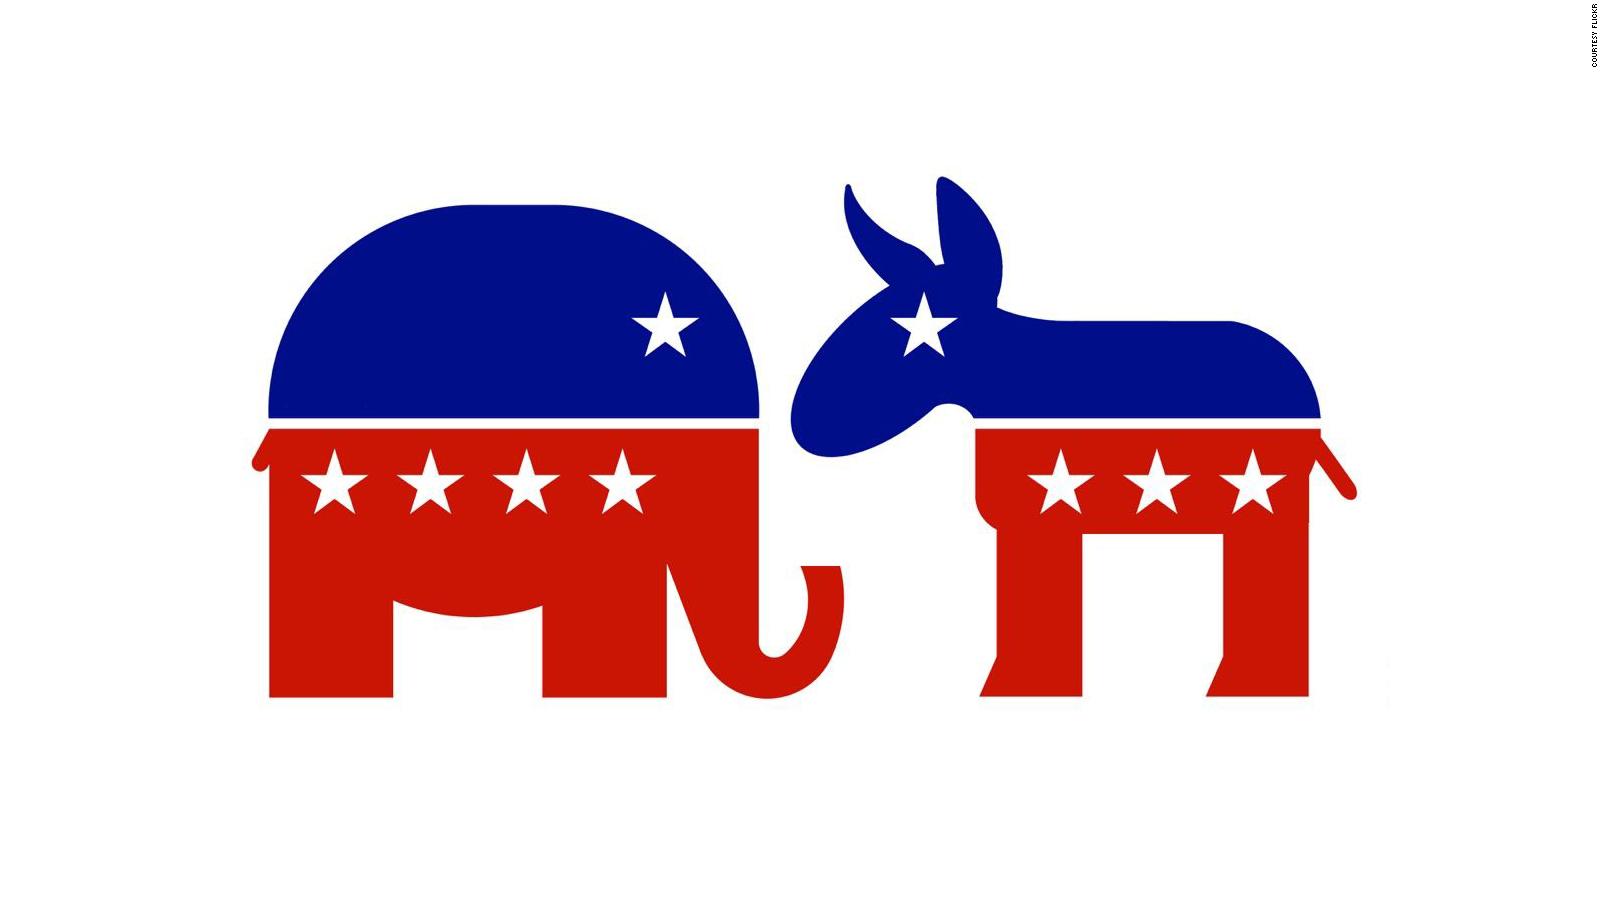 elephant donkey Republican Democrat